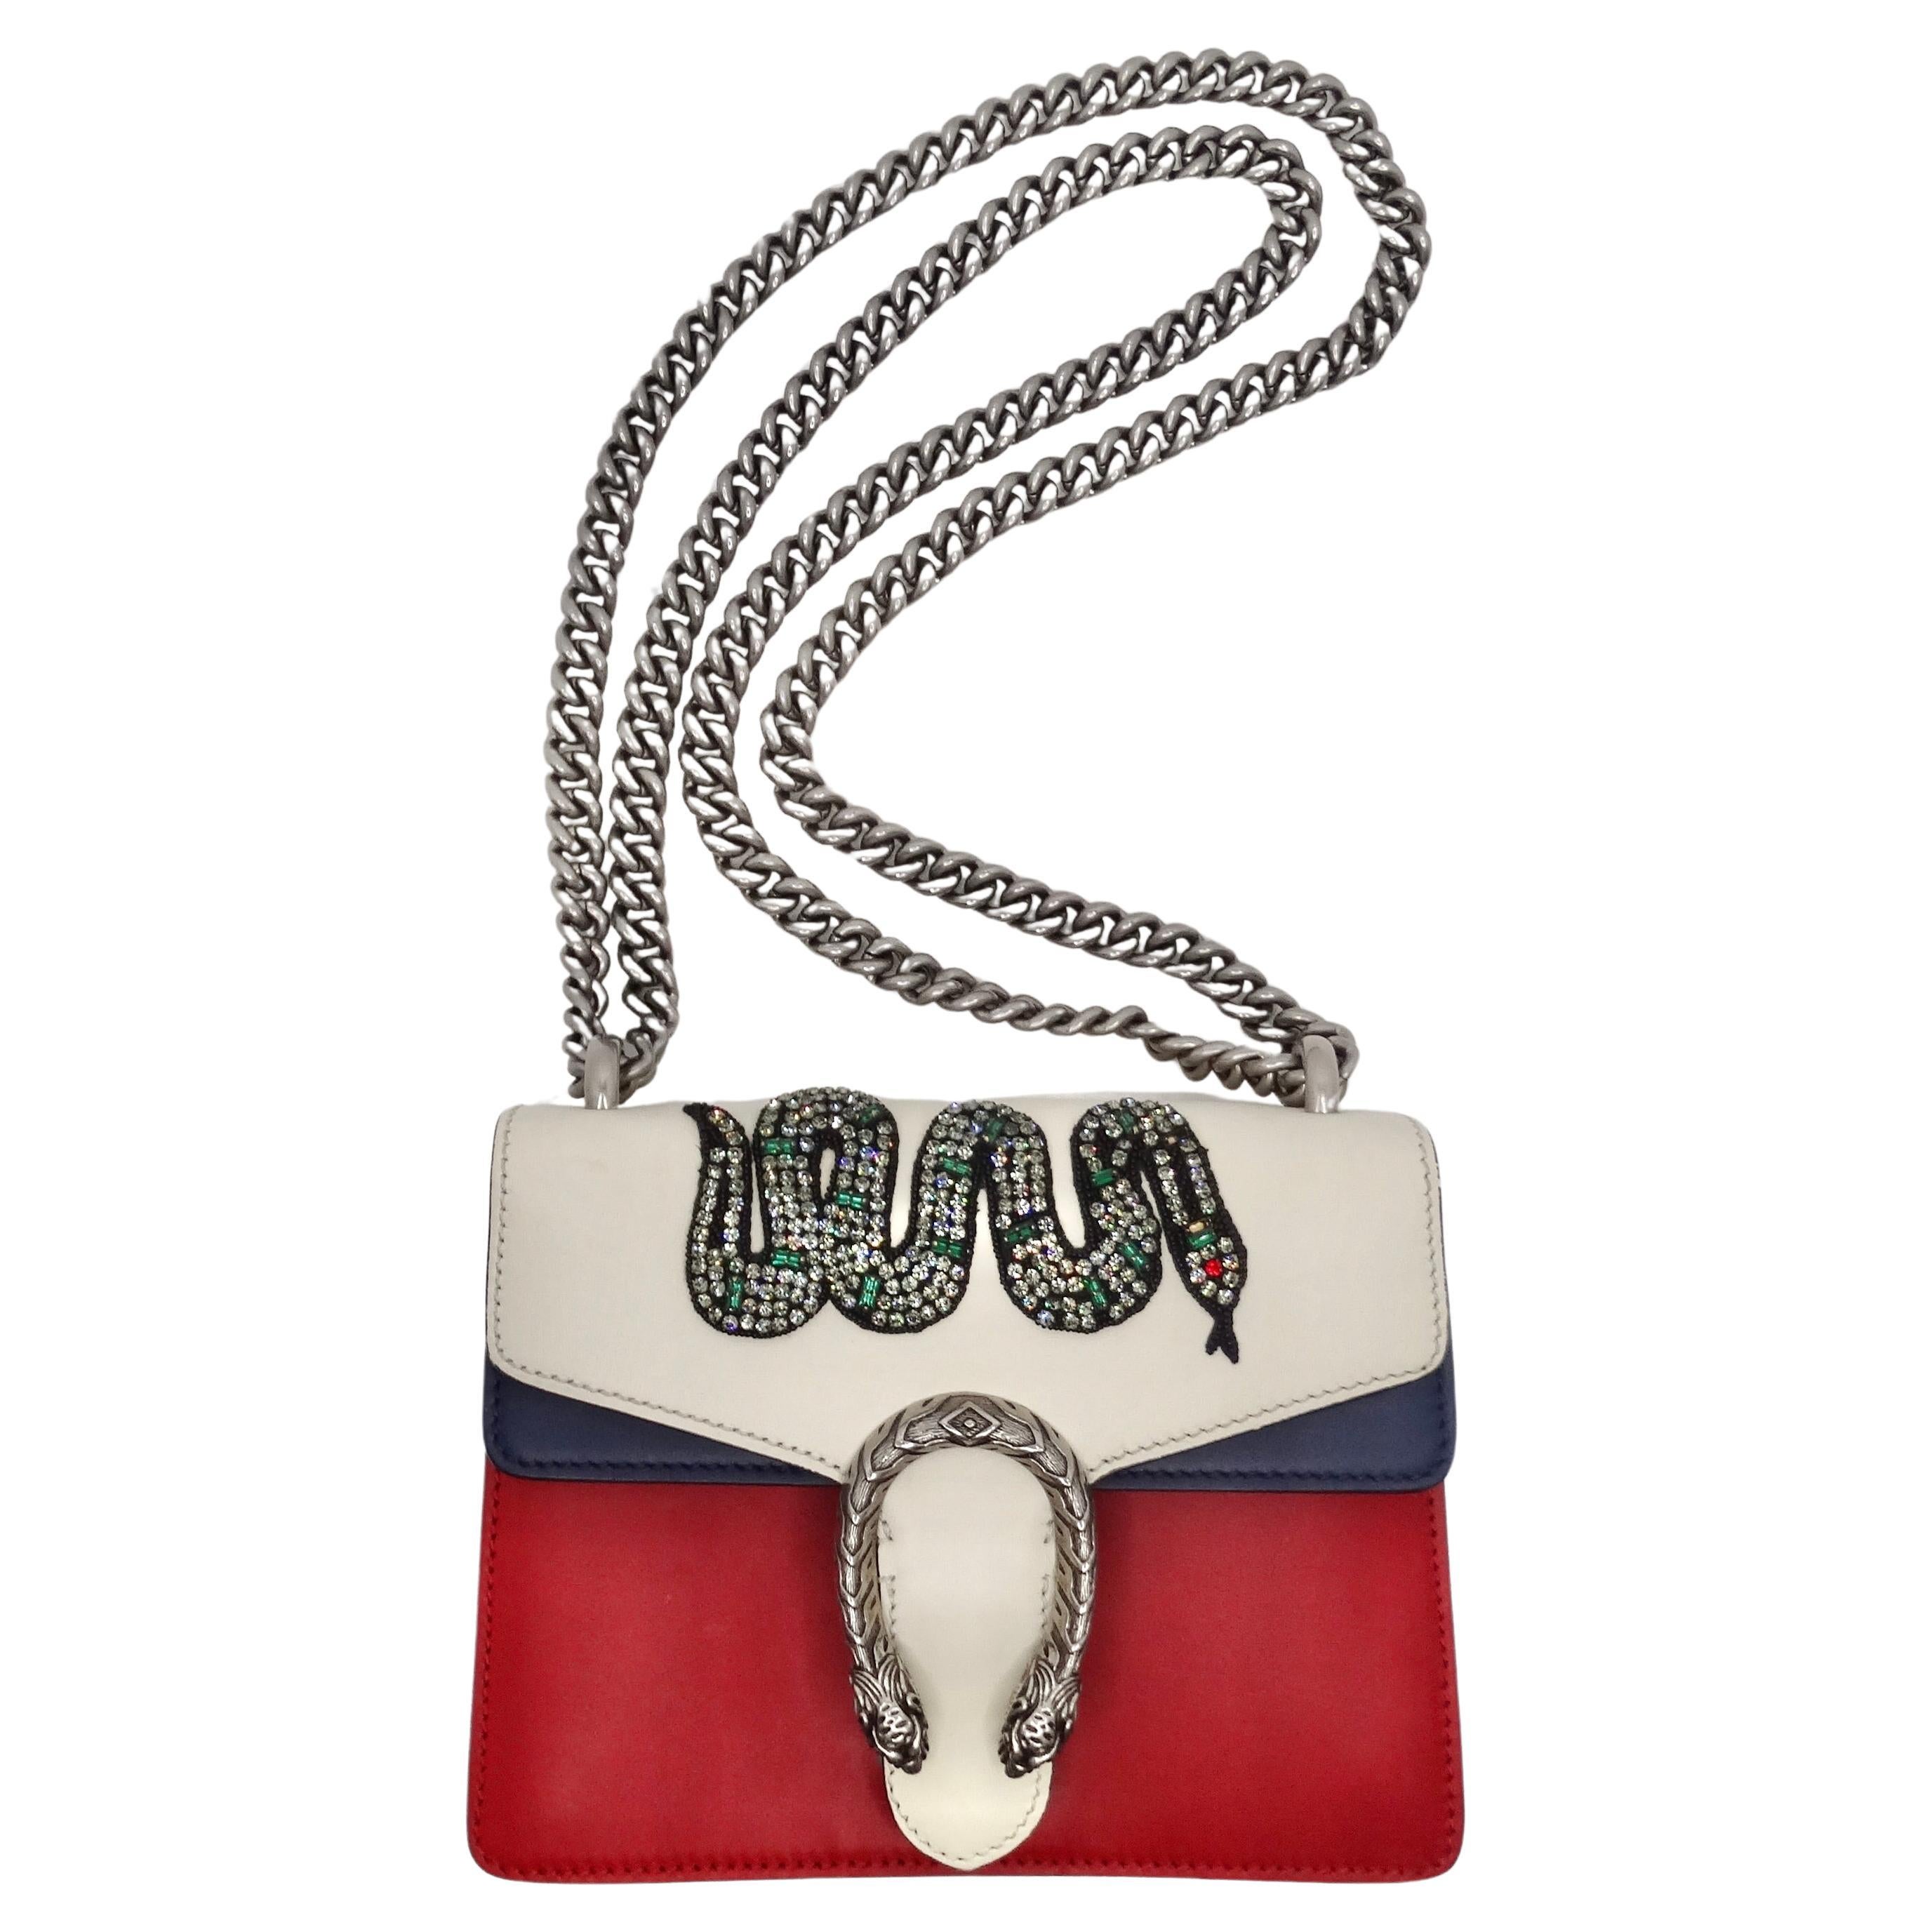 Die Gucci Multicolor Leather Mini Crystal Snake Embroidered Dionysus Bag ist eine atemberaubende Verschmelzung von Kunst und Luxus, die ein unvergessliches Statement setzt. Die aus rotem, weißem und marineblauem Leder gefertigte Handtasche ist mit